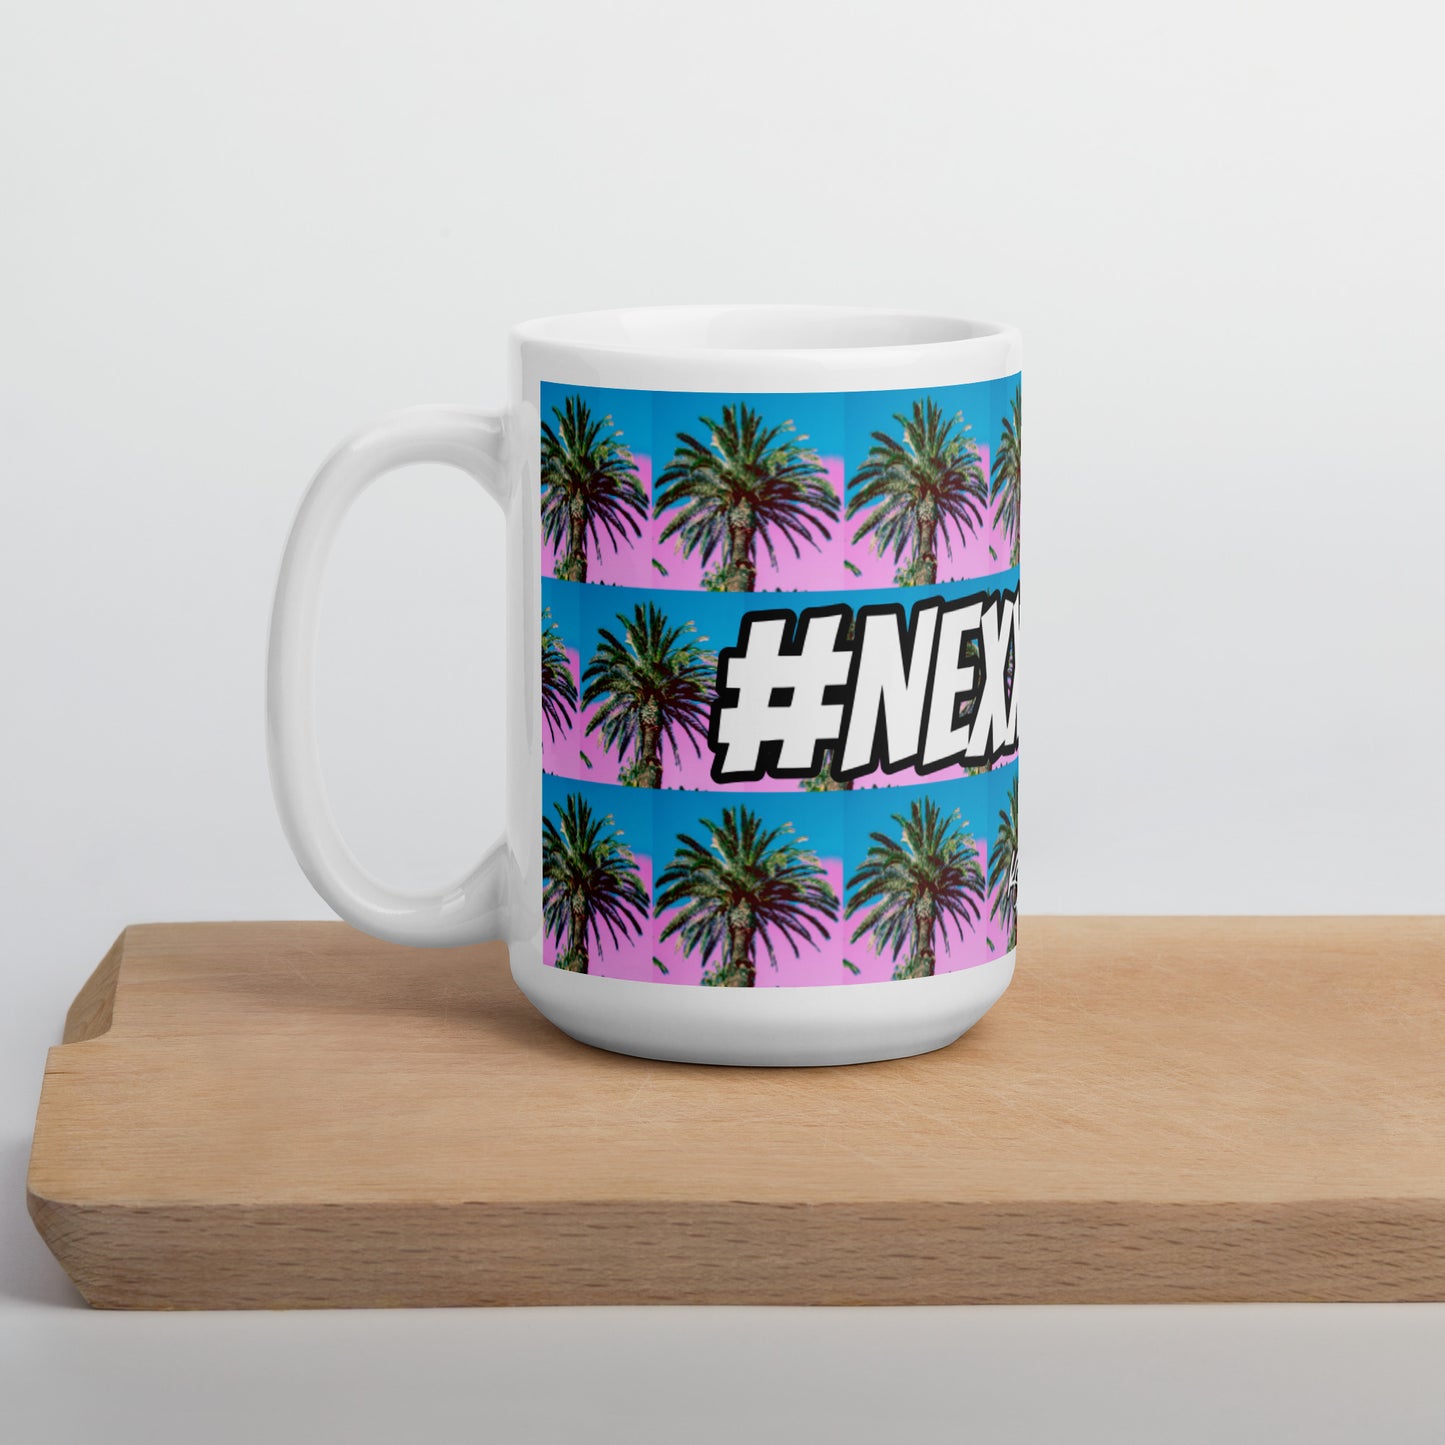 (New) #Nexxtpush Cotton Candy Palm Tree White glossy mug